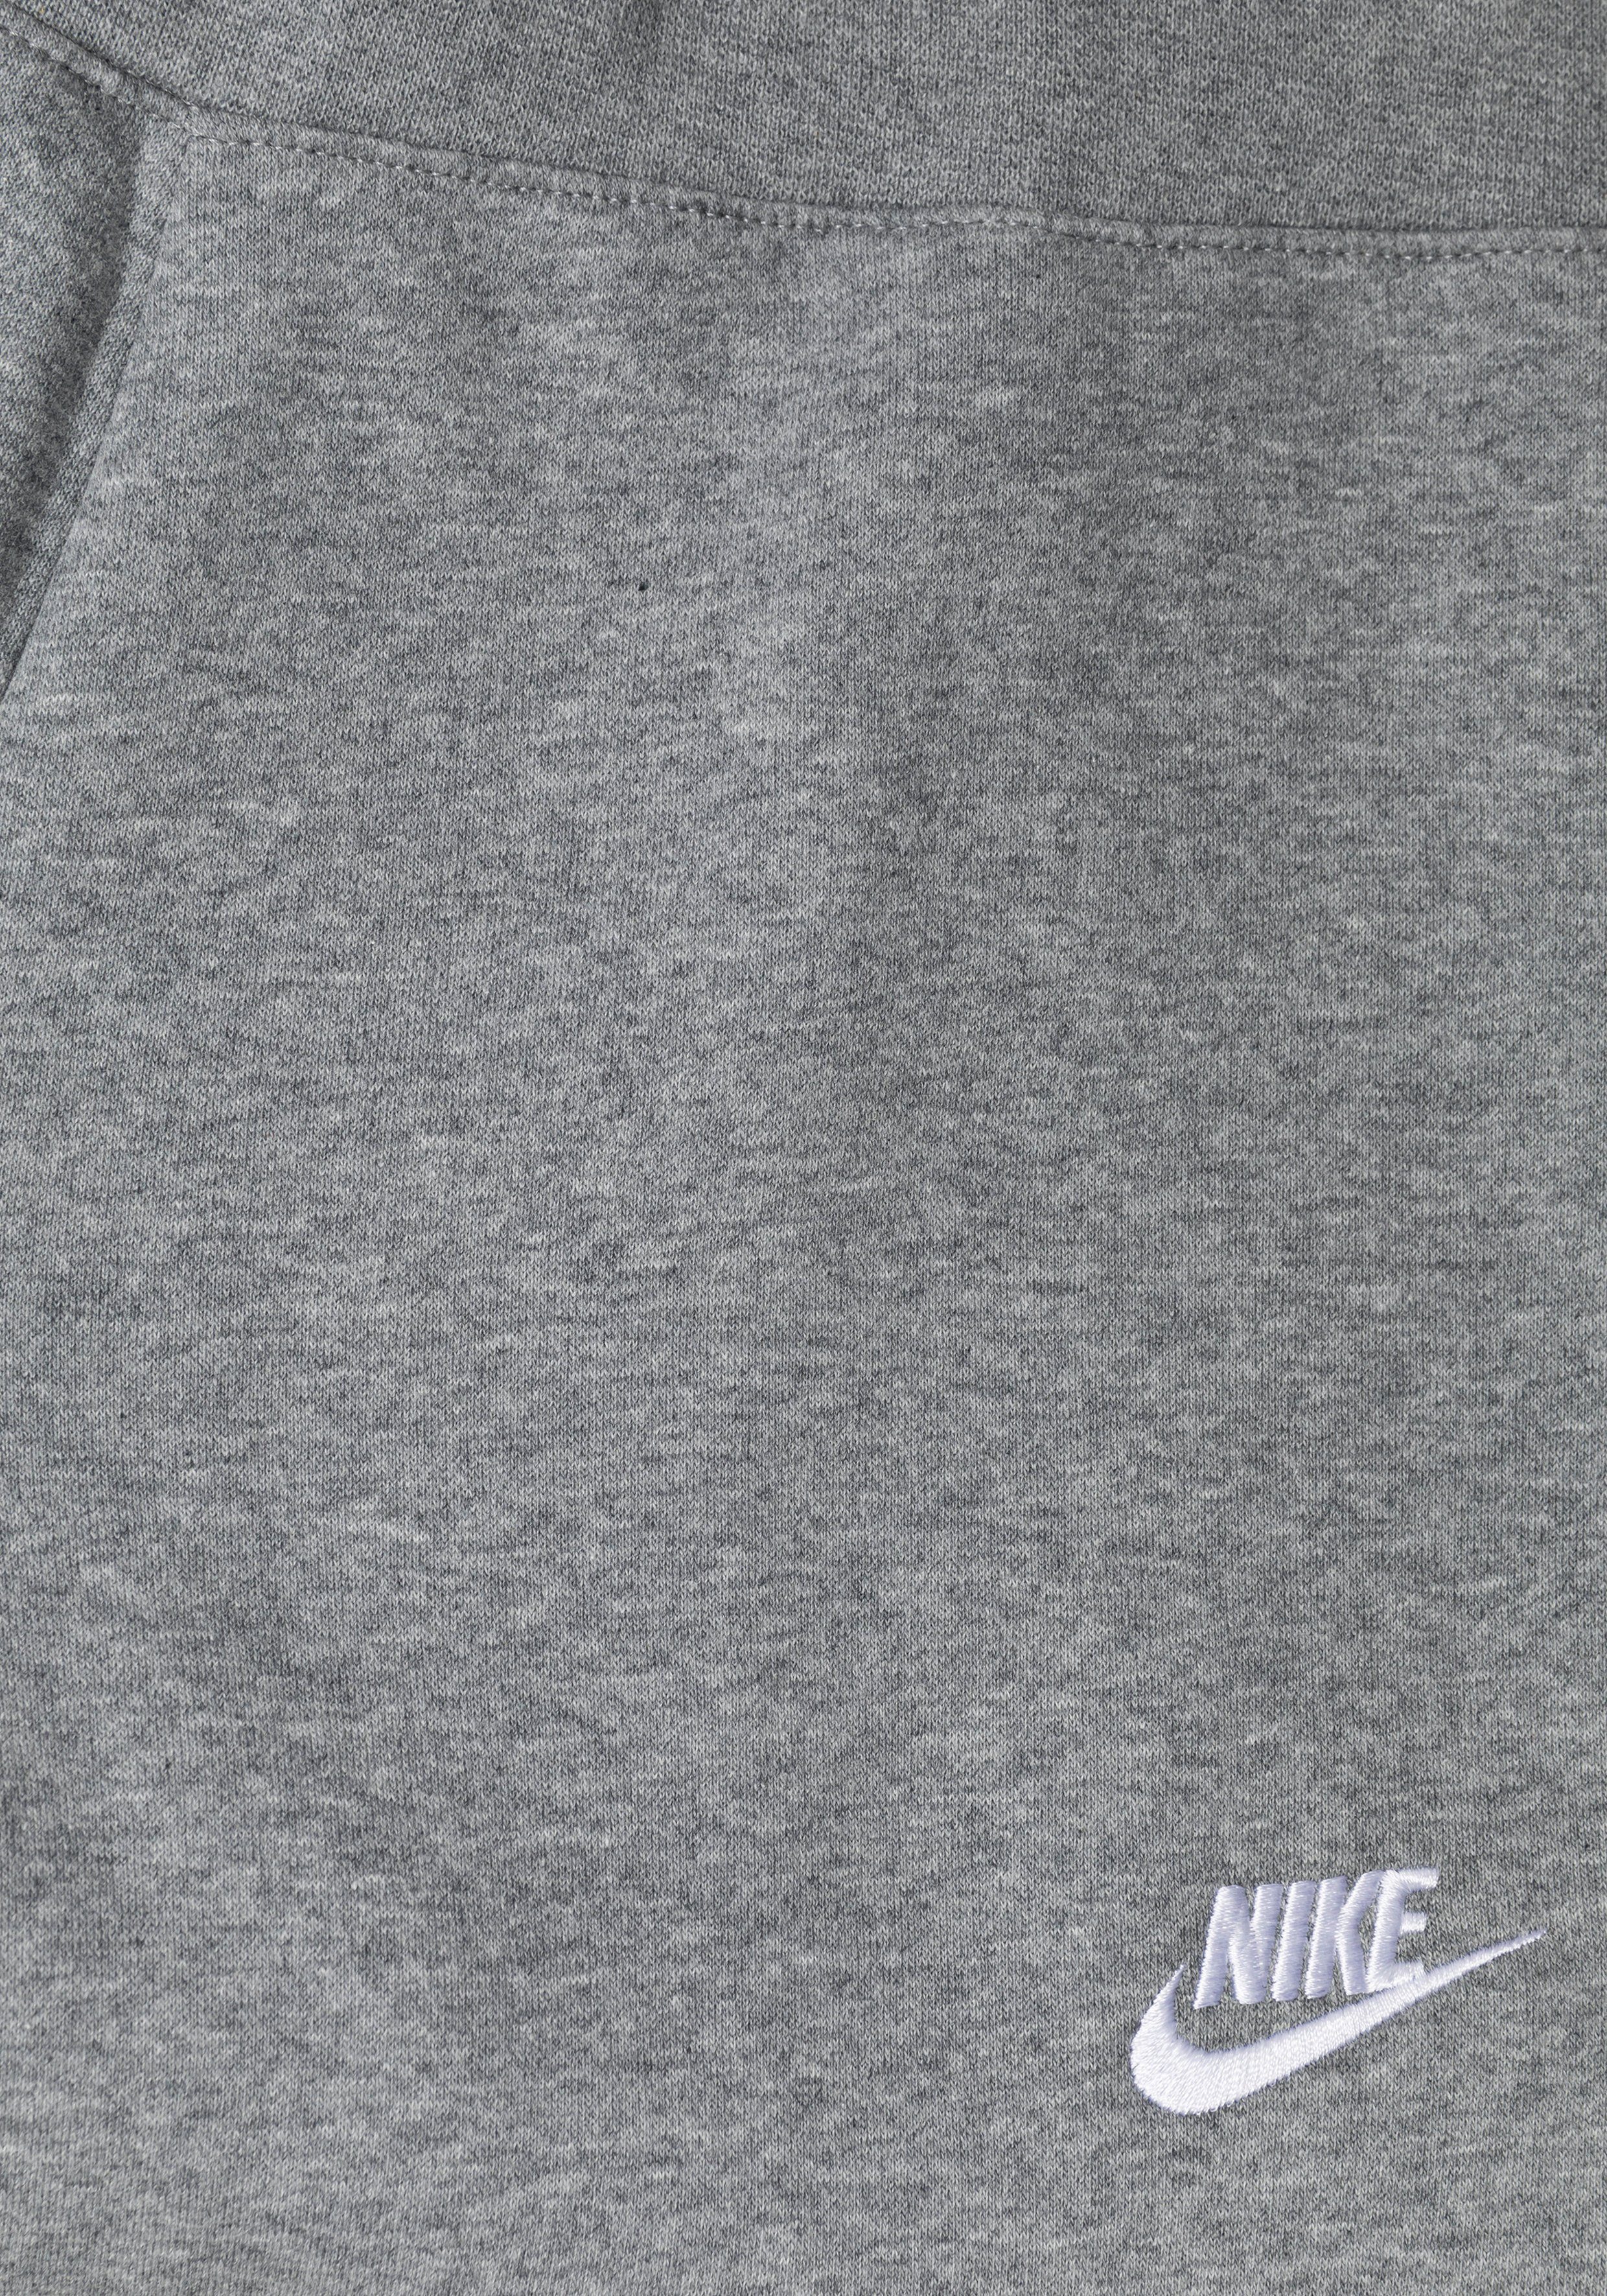 Nike Big Kids' Jogginghose (Girls) Club Pants Sportswear Fleece grau-meliert